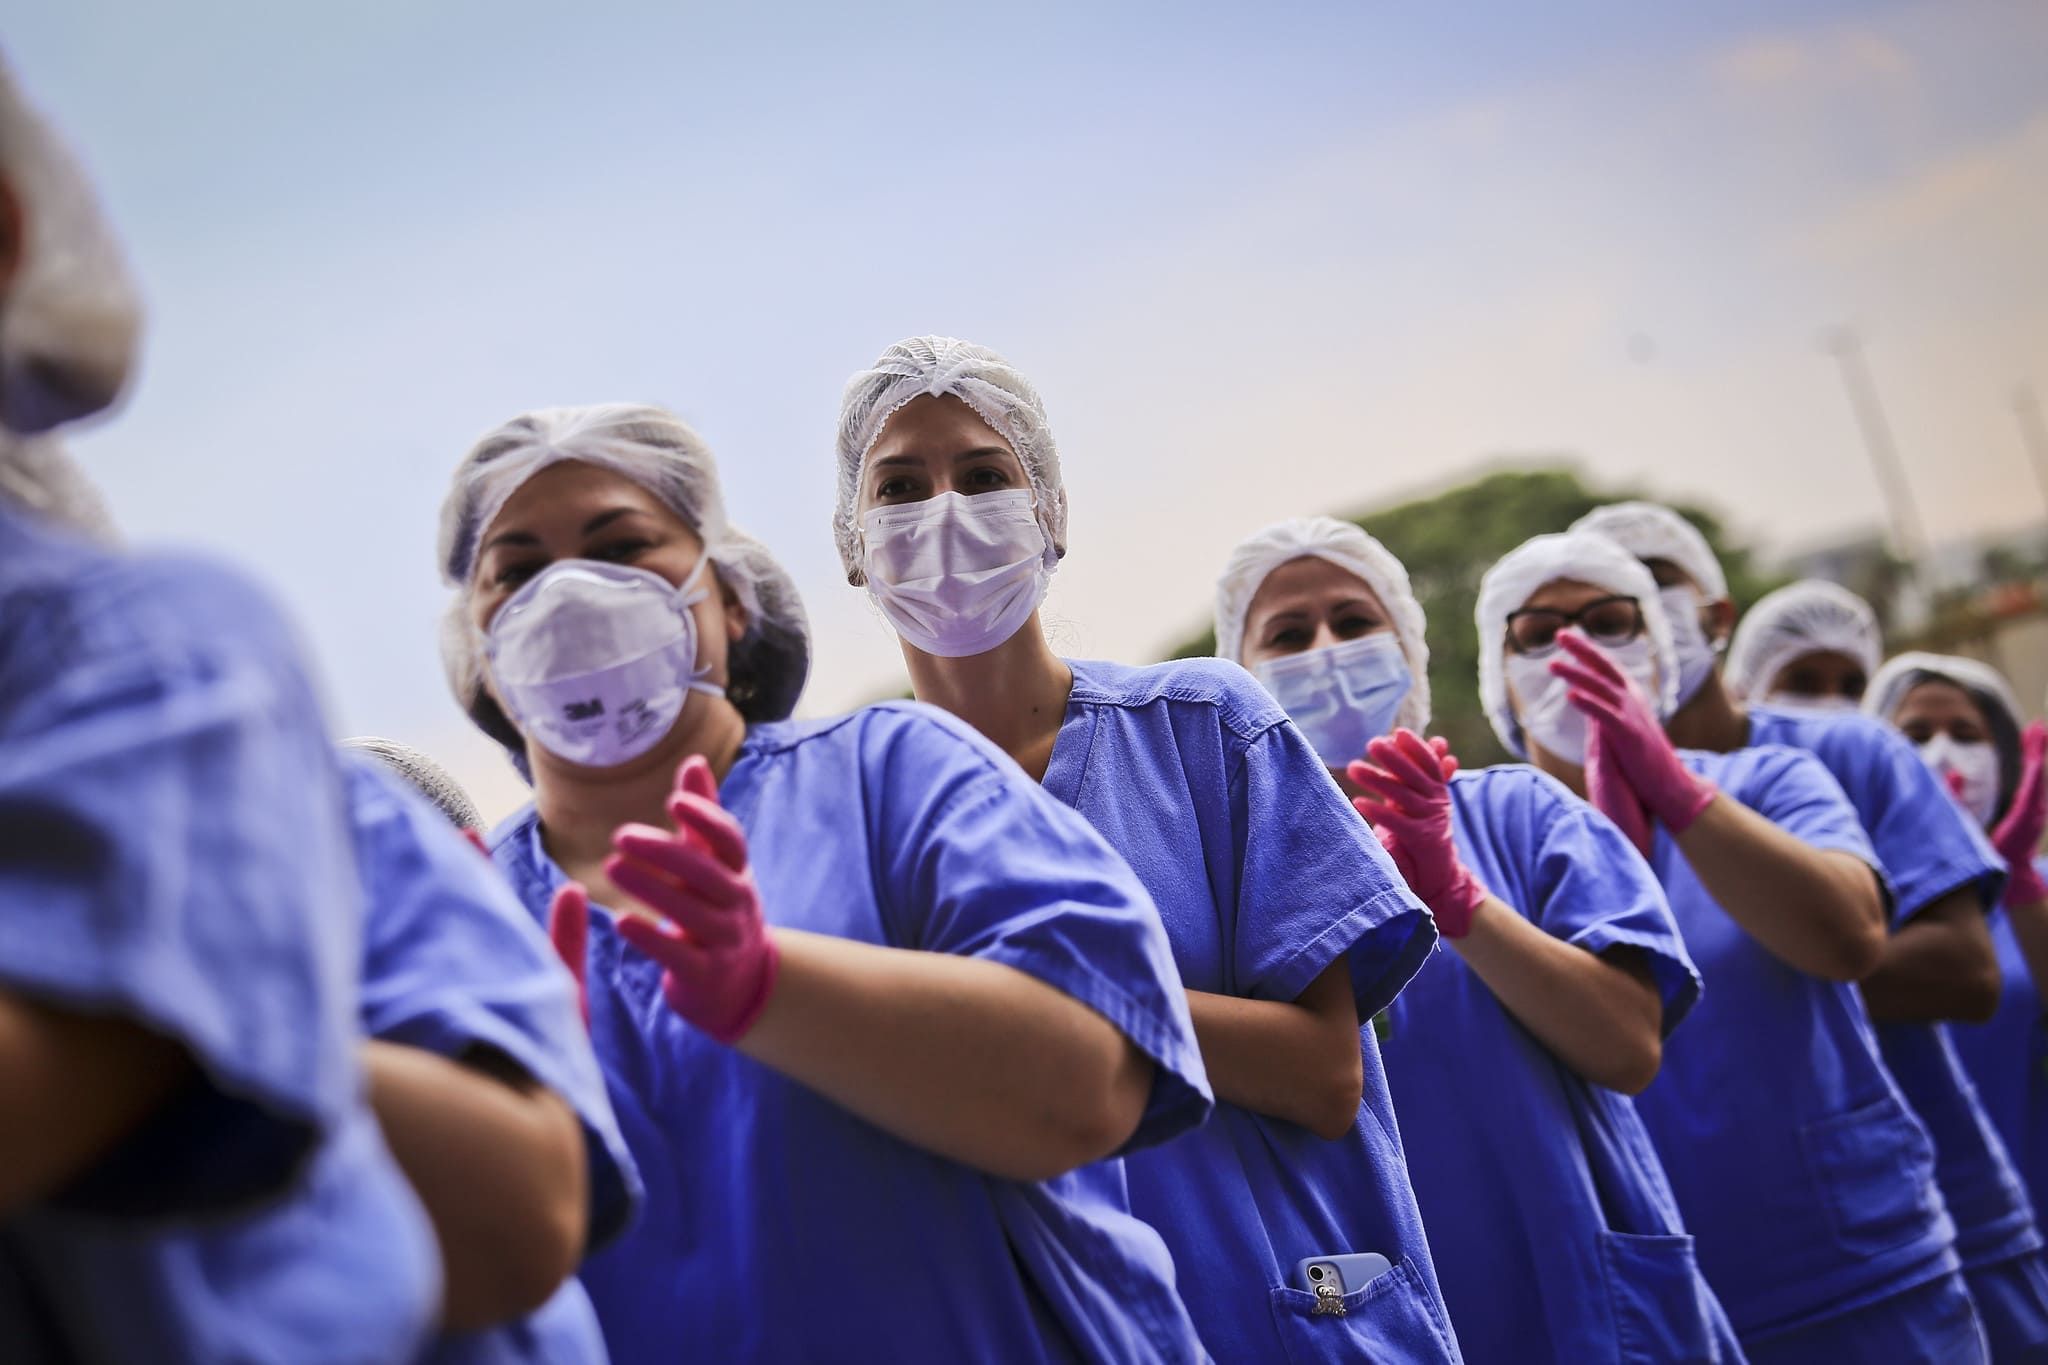 A foto ilustra vários enfermeiros utilizando EPIs (Equipamentos de Proteção Individual)